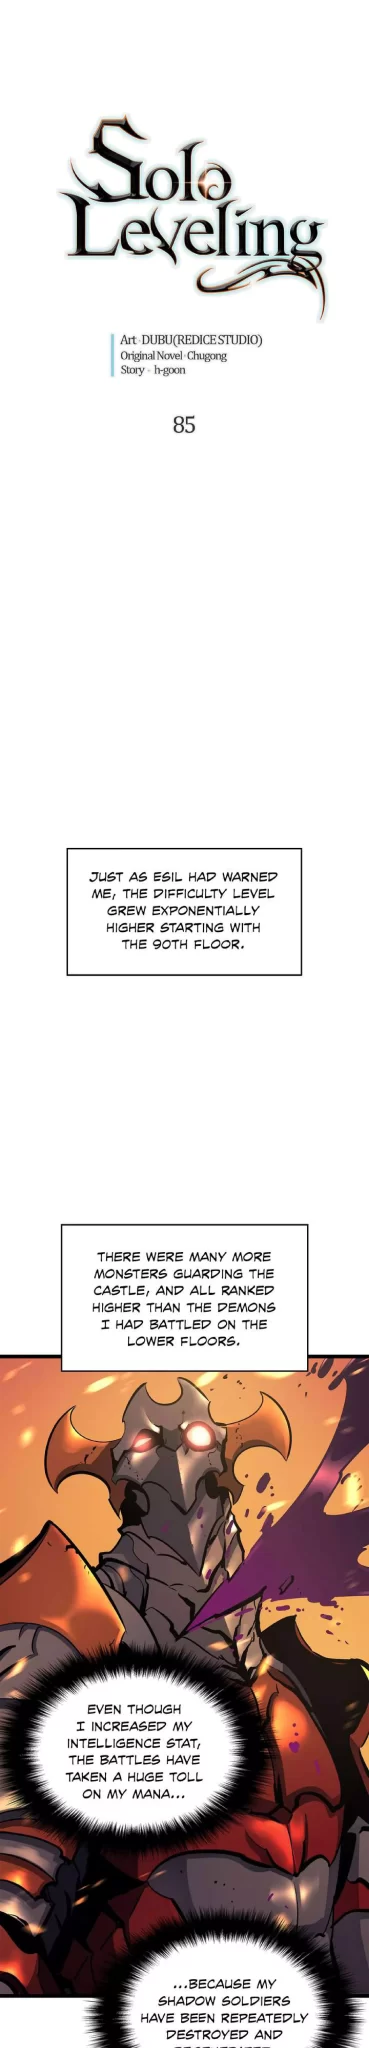 Solo Leveling Manga Manga Chapter - 85 - image 1